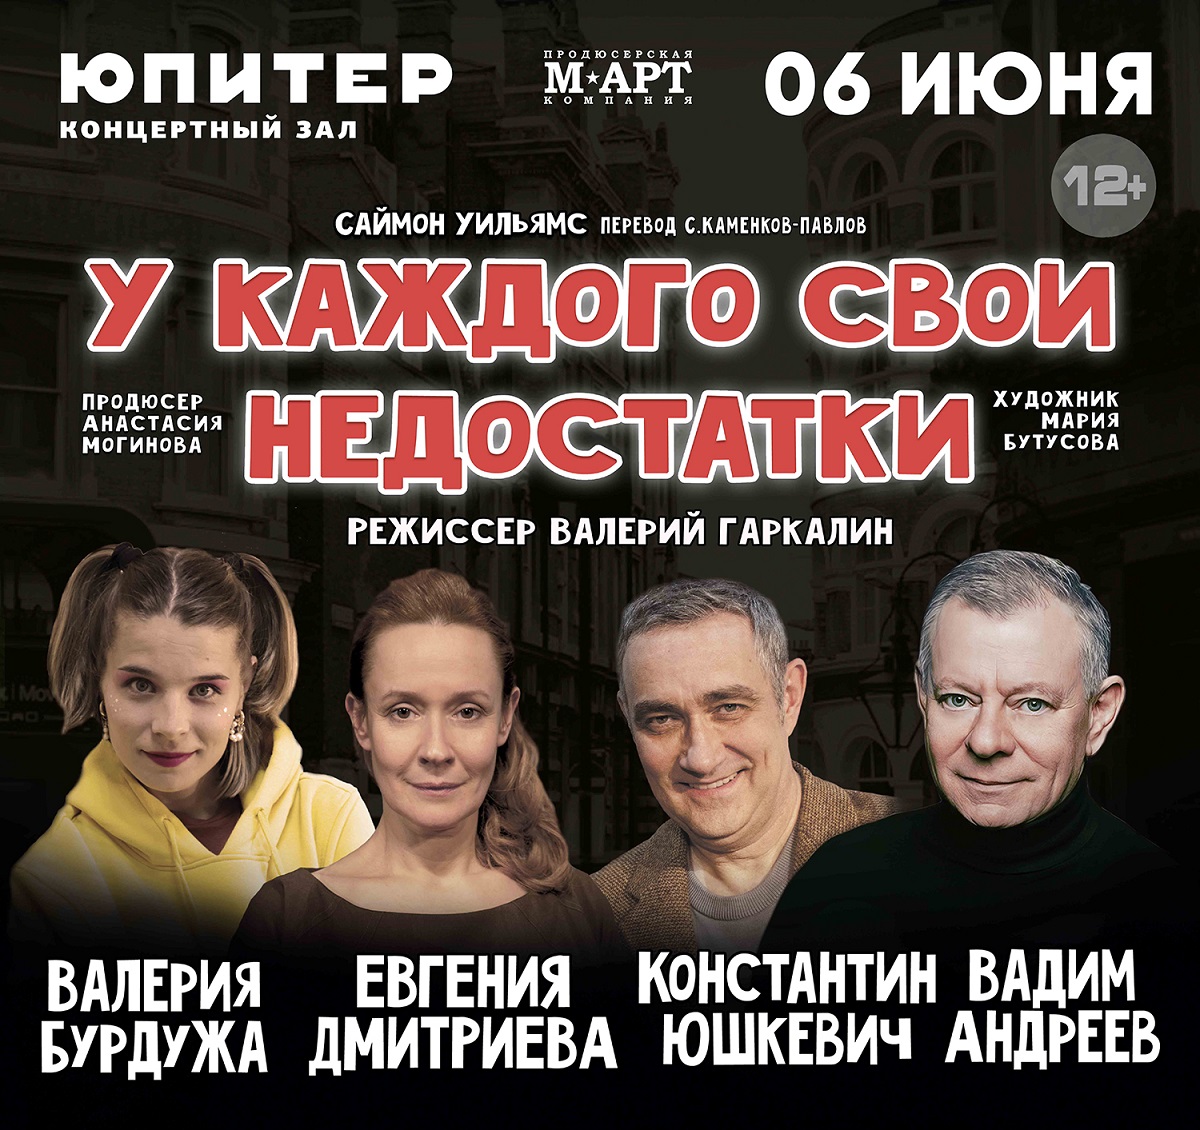 Спектакль «У каждого свои недостатки» состоится в Нижнем Новгороде